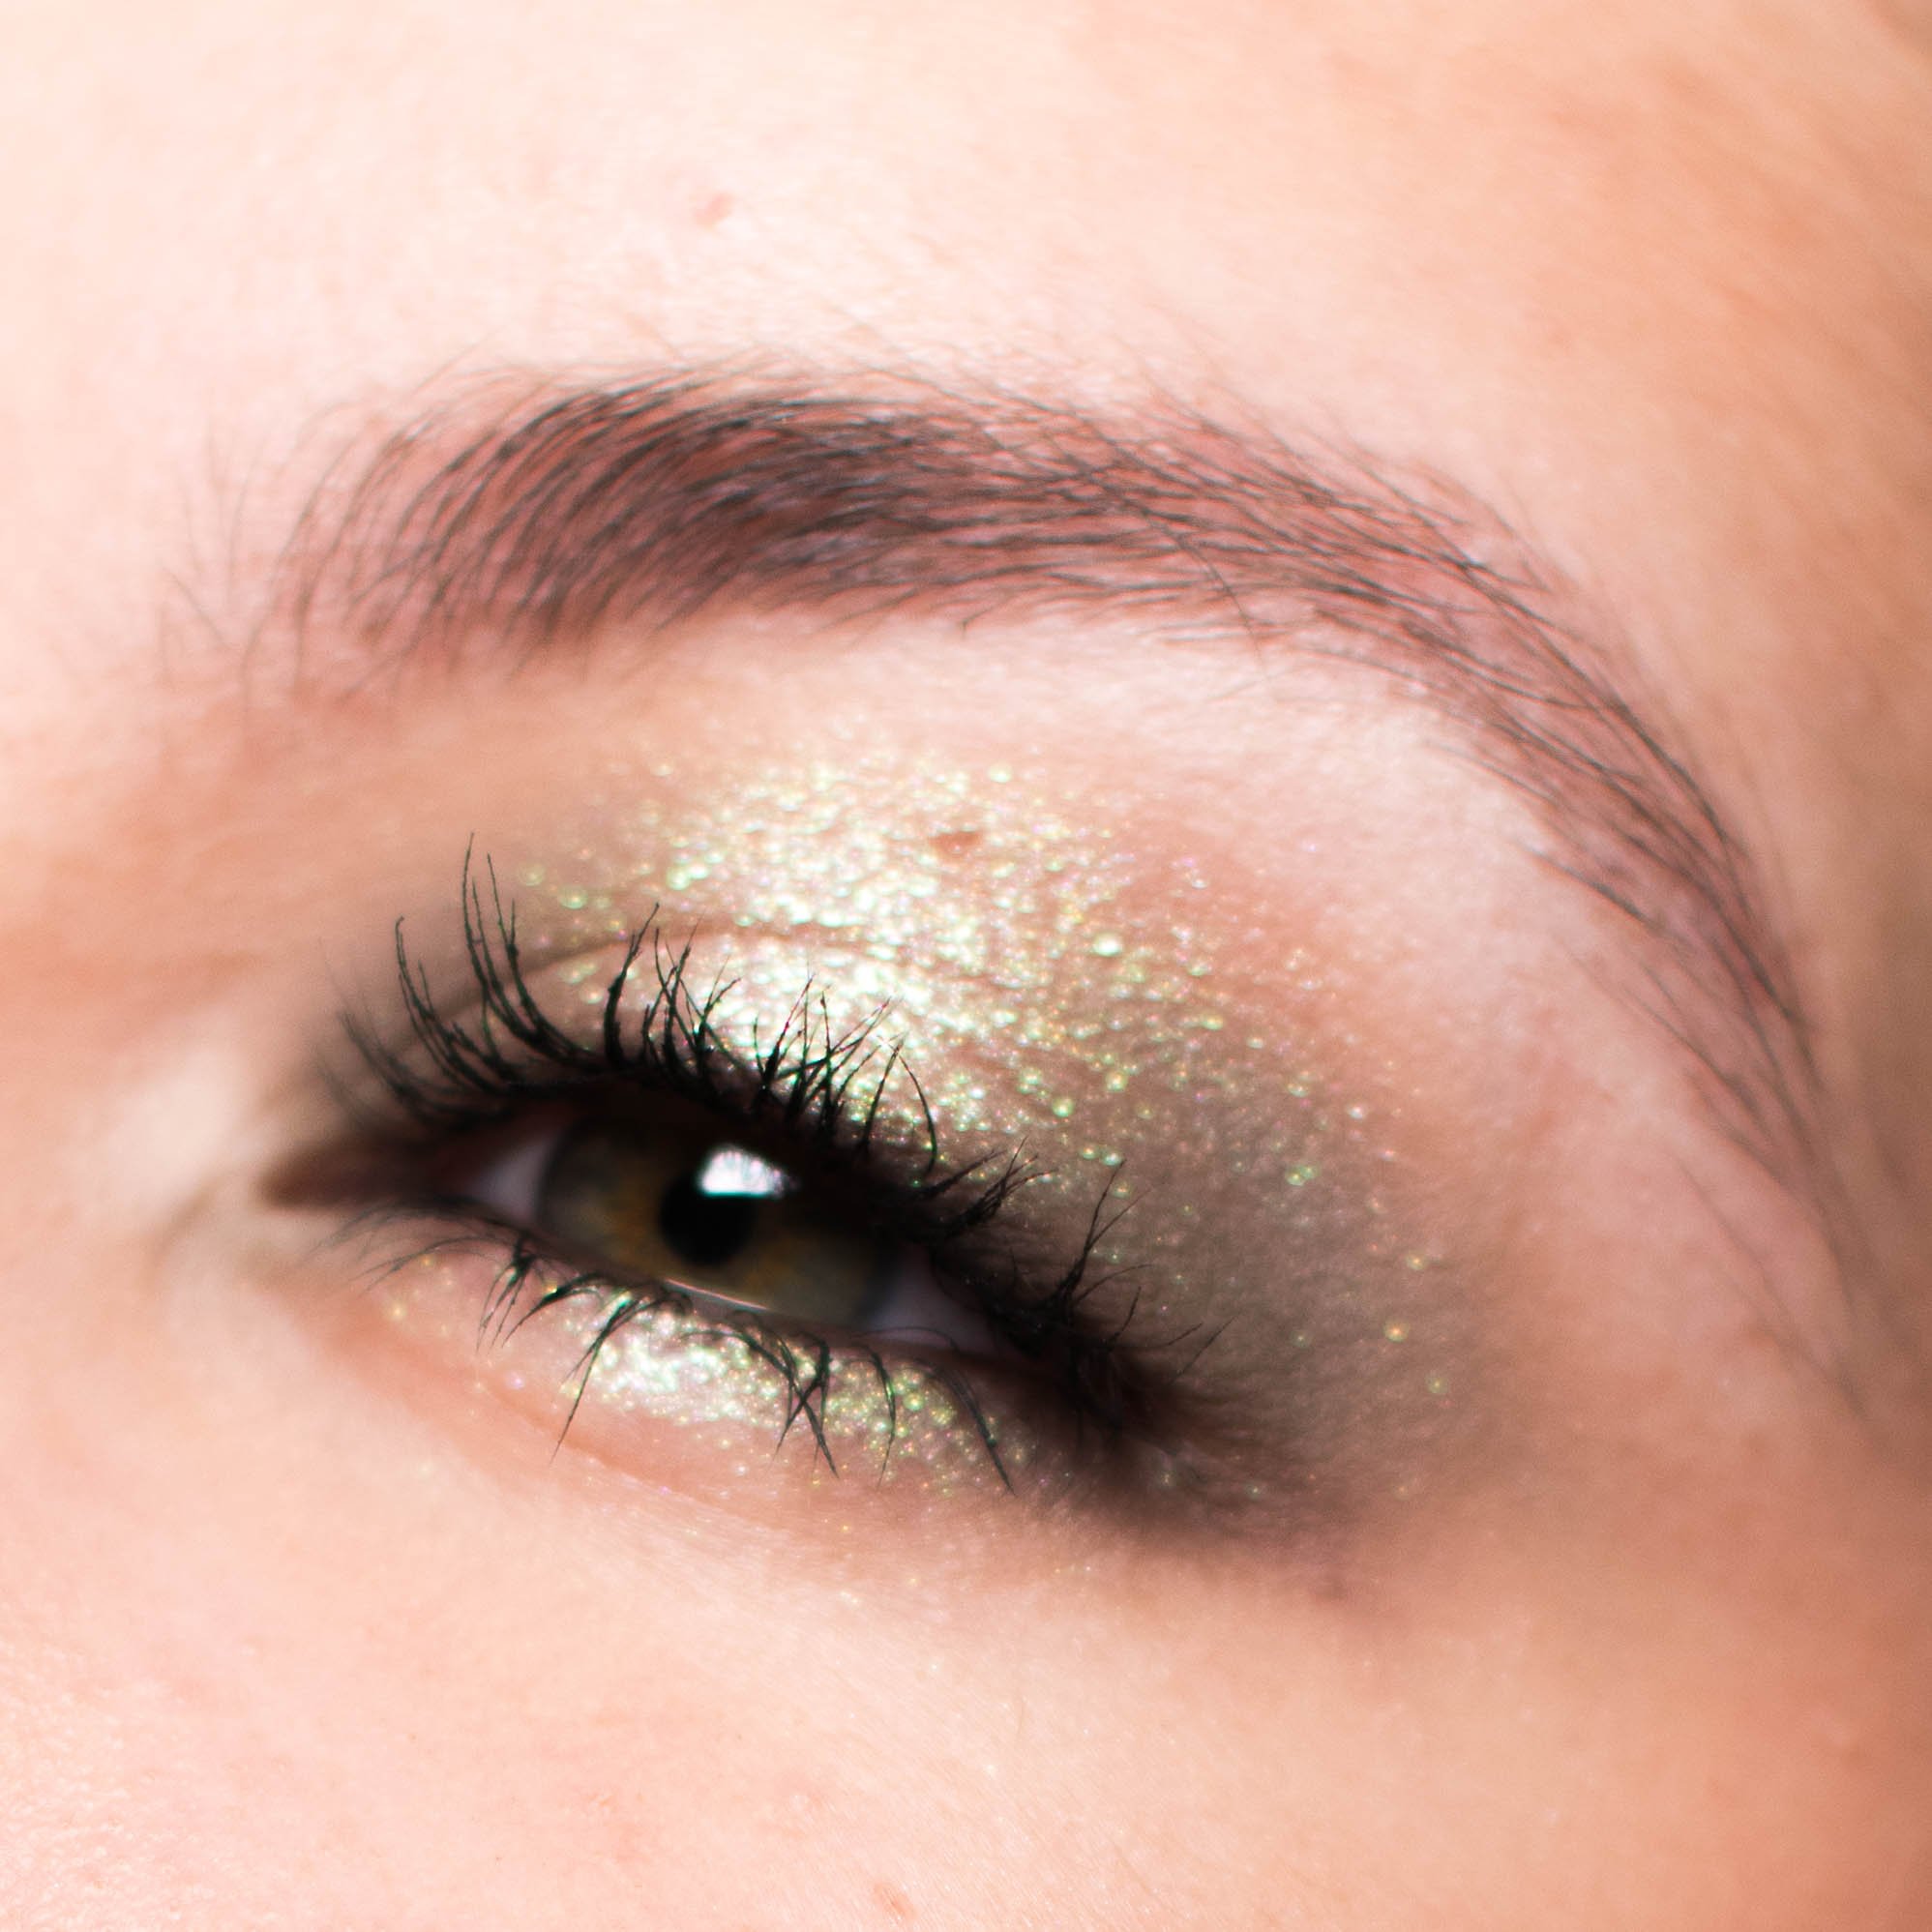 Maquillage Noël : 90 idées de makeup pour les fêtes